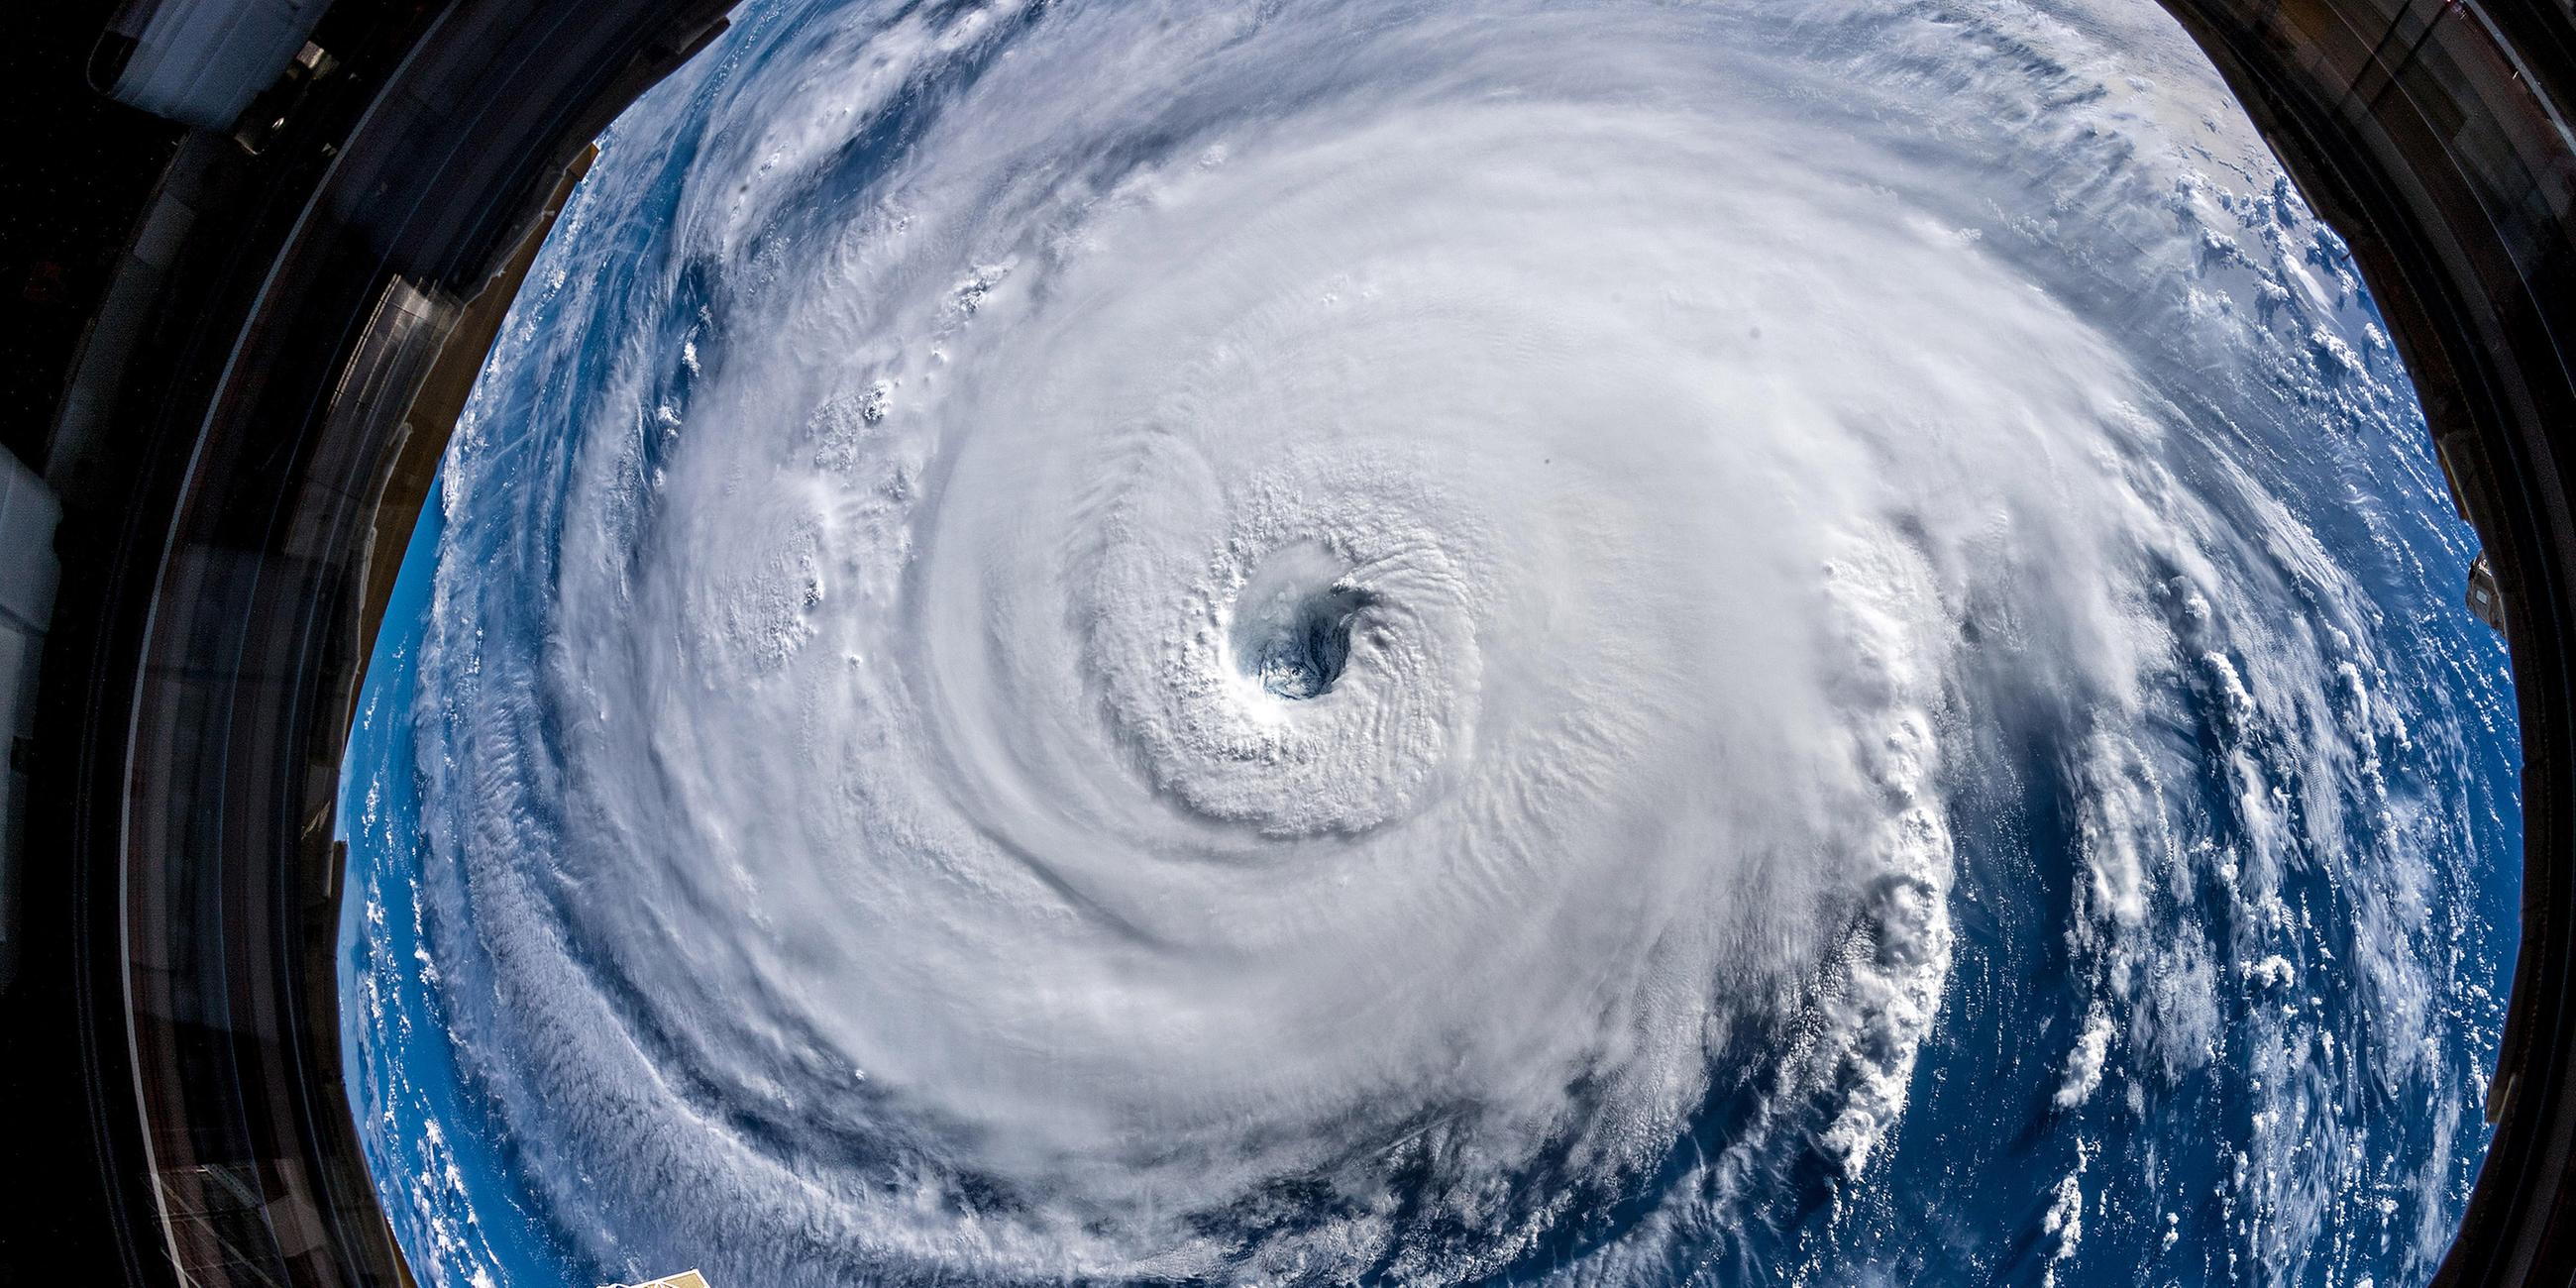 Hurrikan Florence aufgenommen von Esa-Astronaut Alexander Gerst aus der ISS.